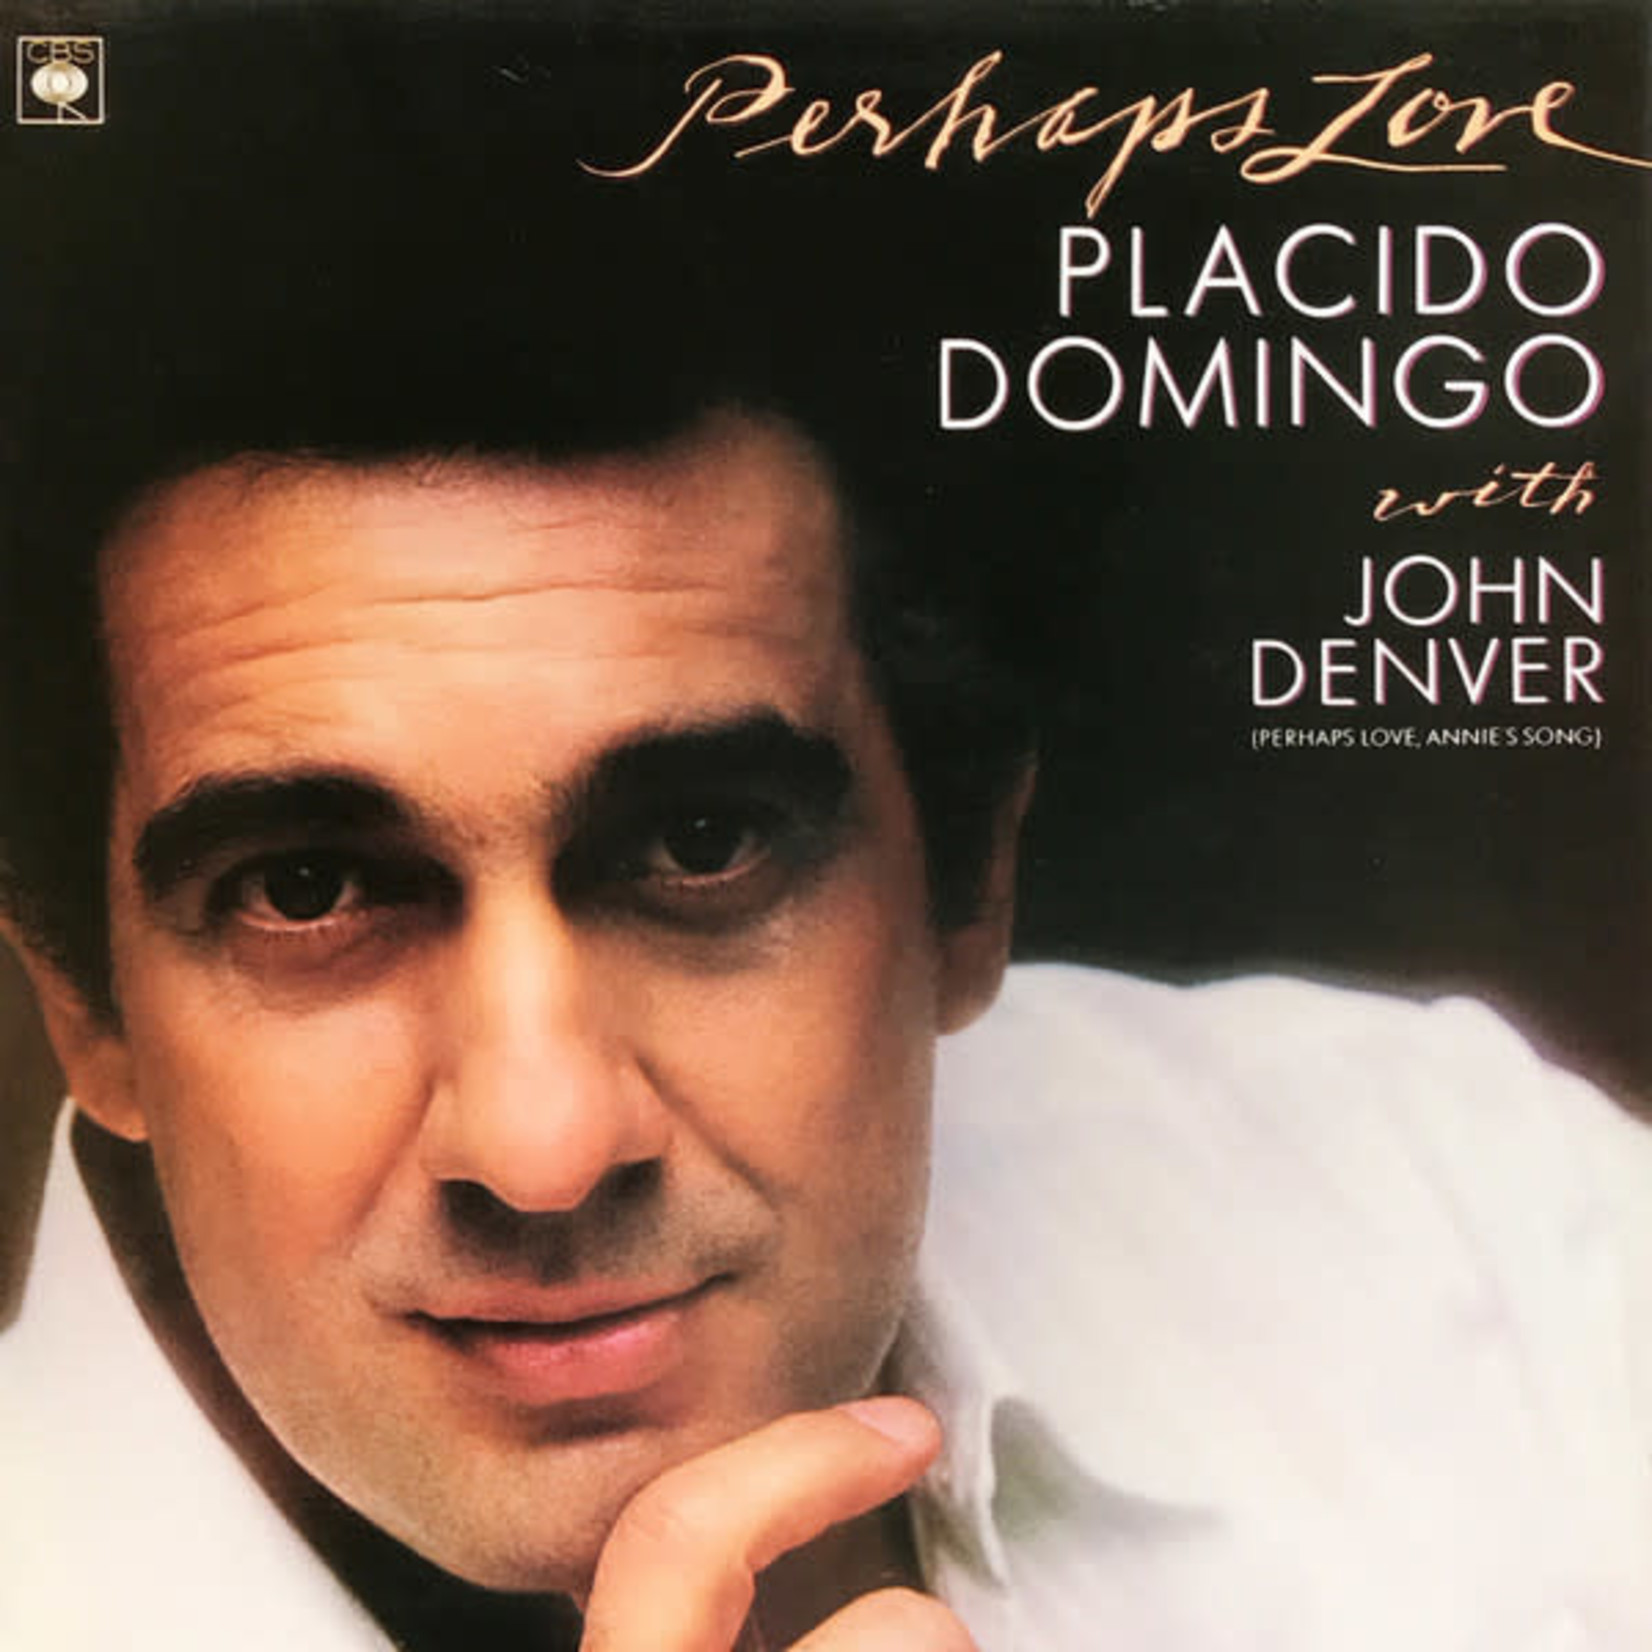 [Vintage] Placido Domingo - Perhaps Love